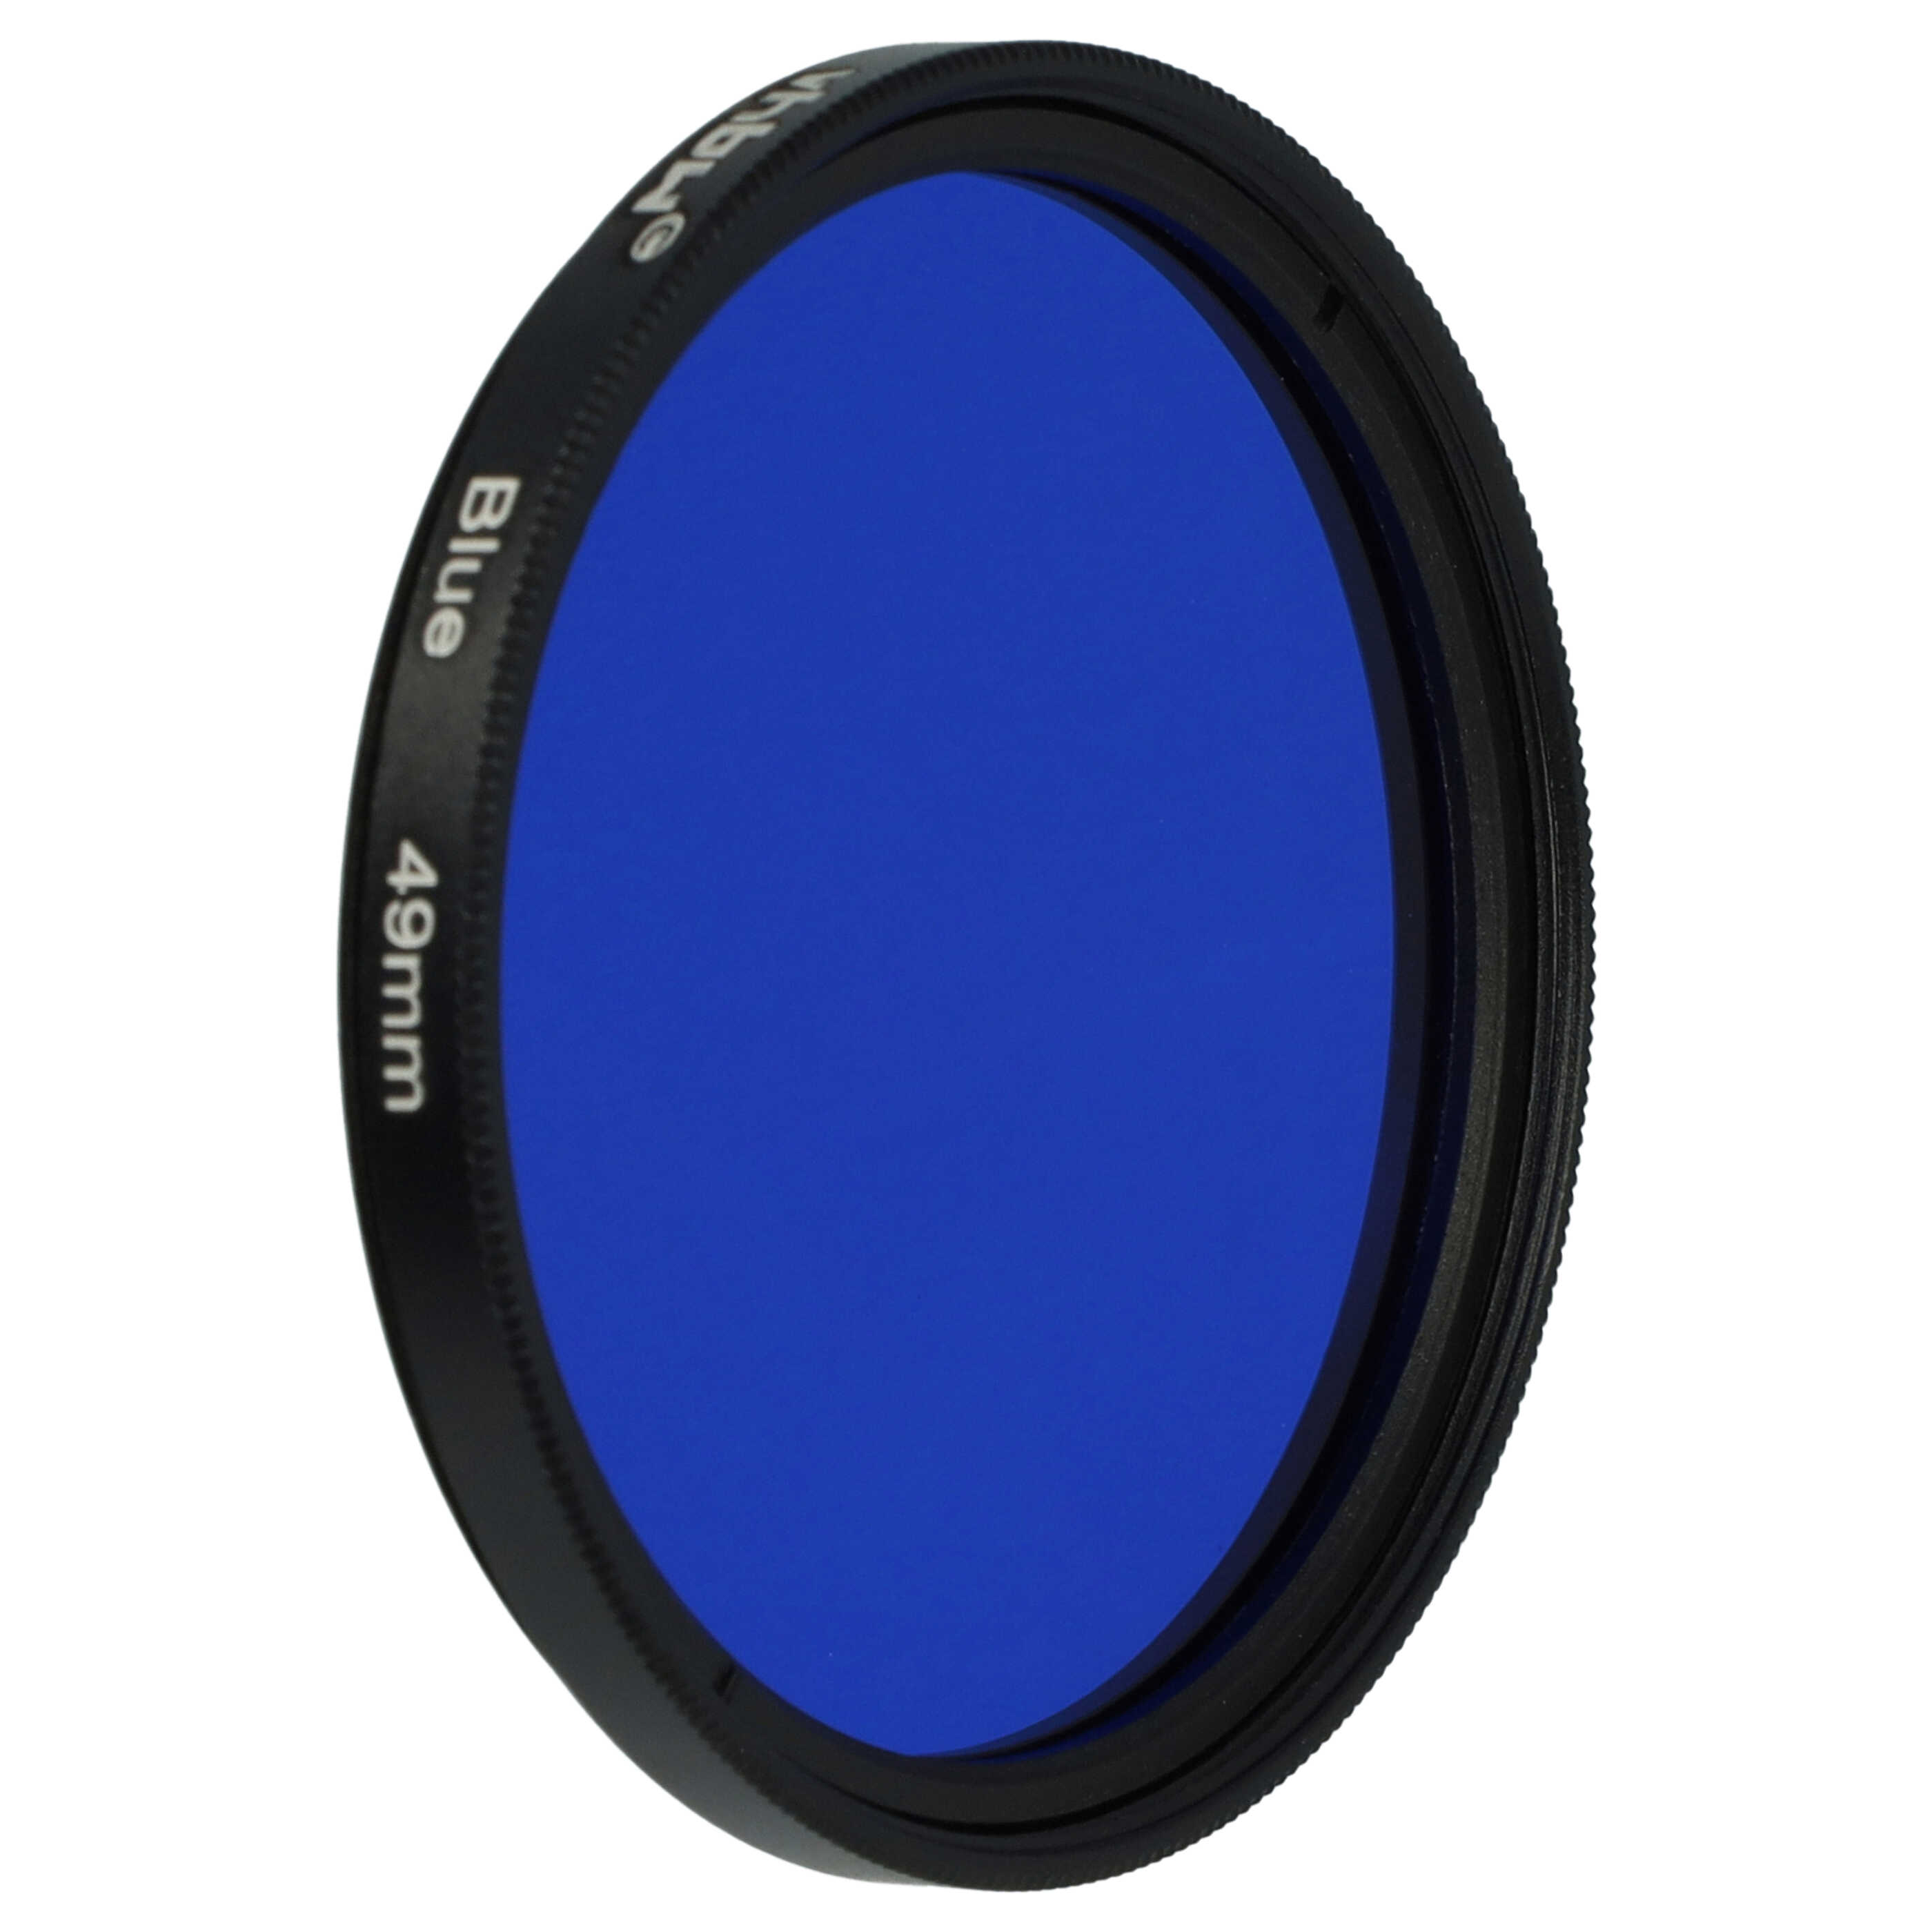 Filtro de color para objetivo de cámara con rosca de filtro de 49 mm - Filtro azul